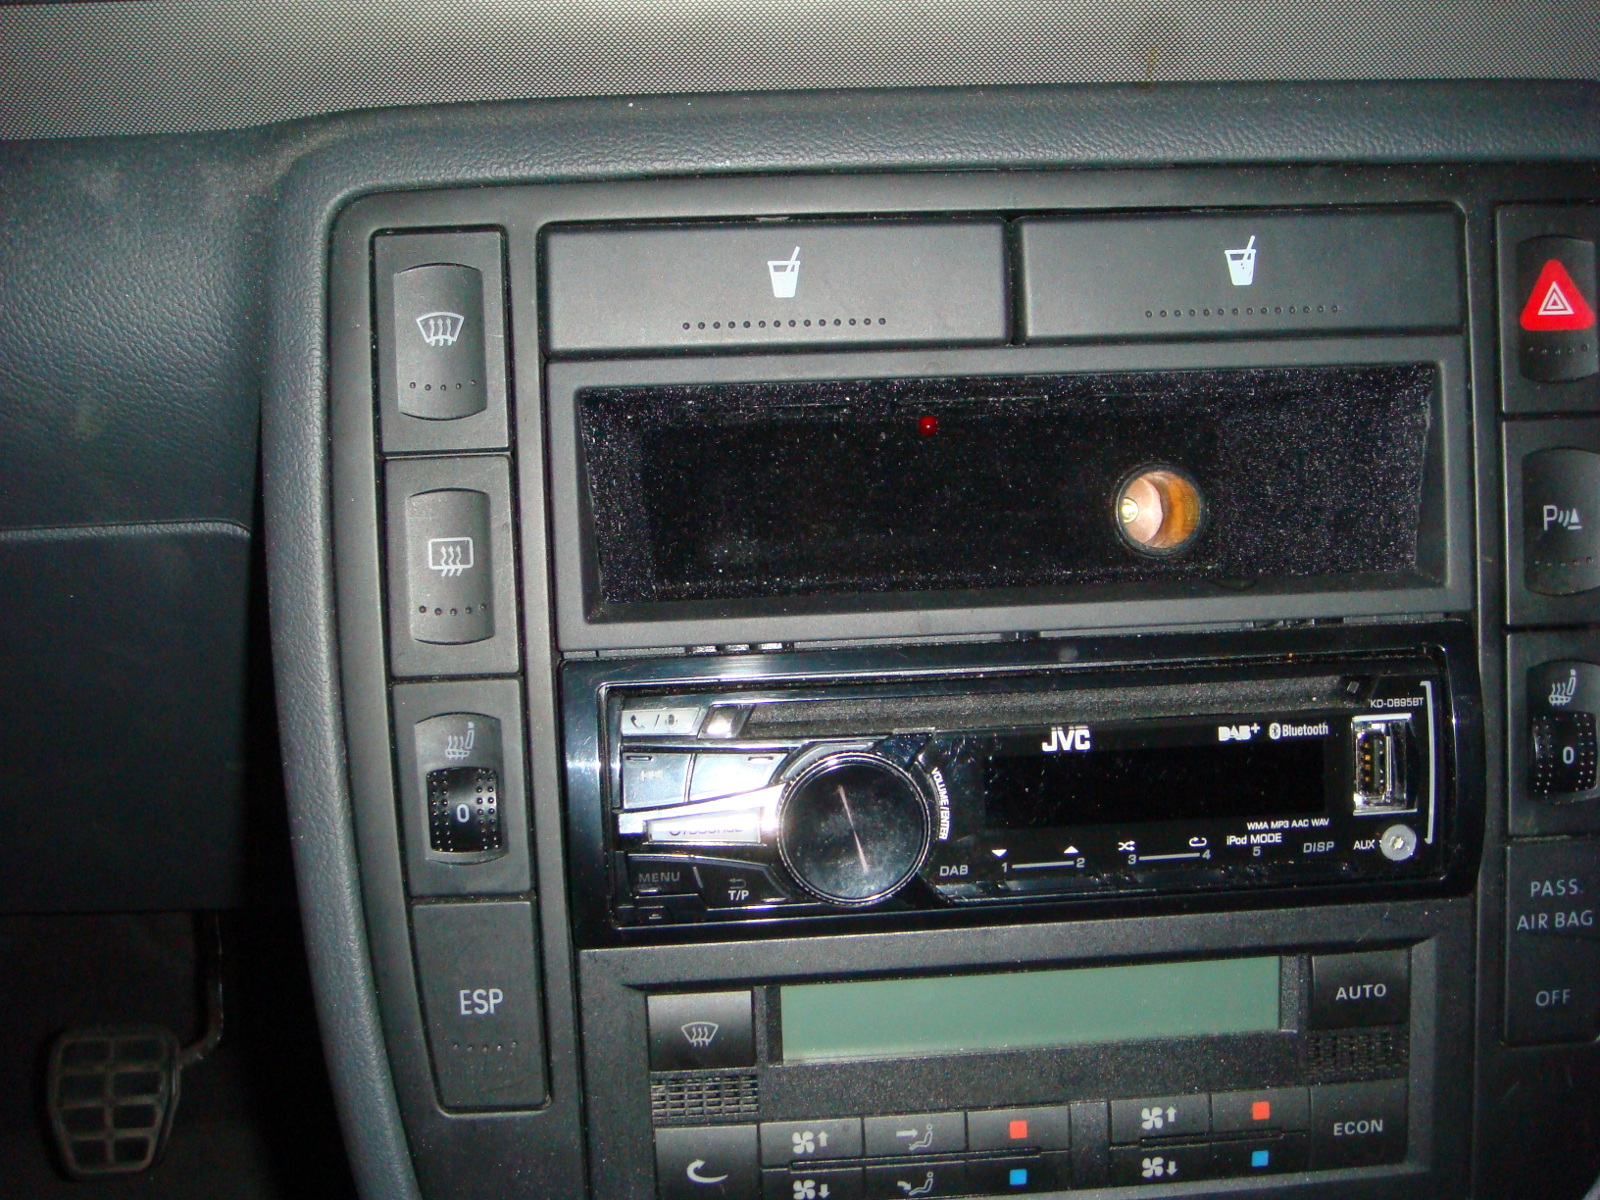 Ablagefach über Radio eingebaut - Fahrzeugblog - Sharan Galaxy Alhambra  Forum